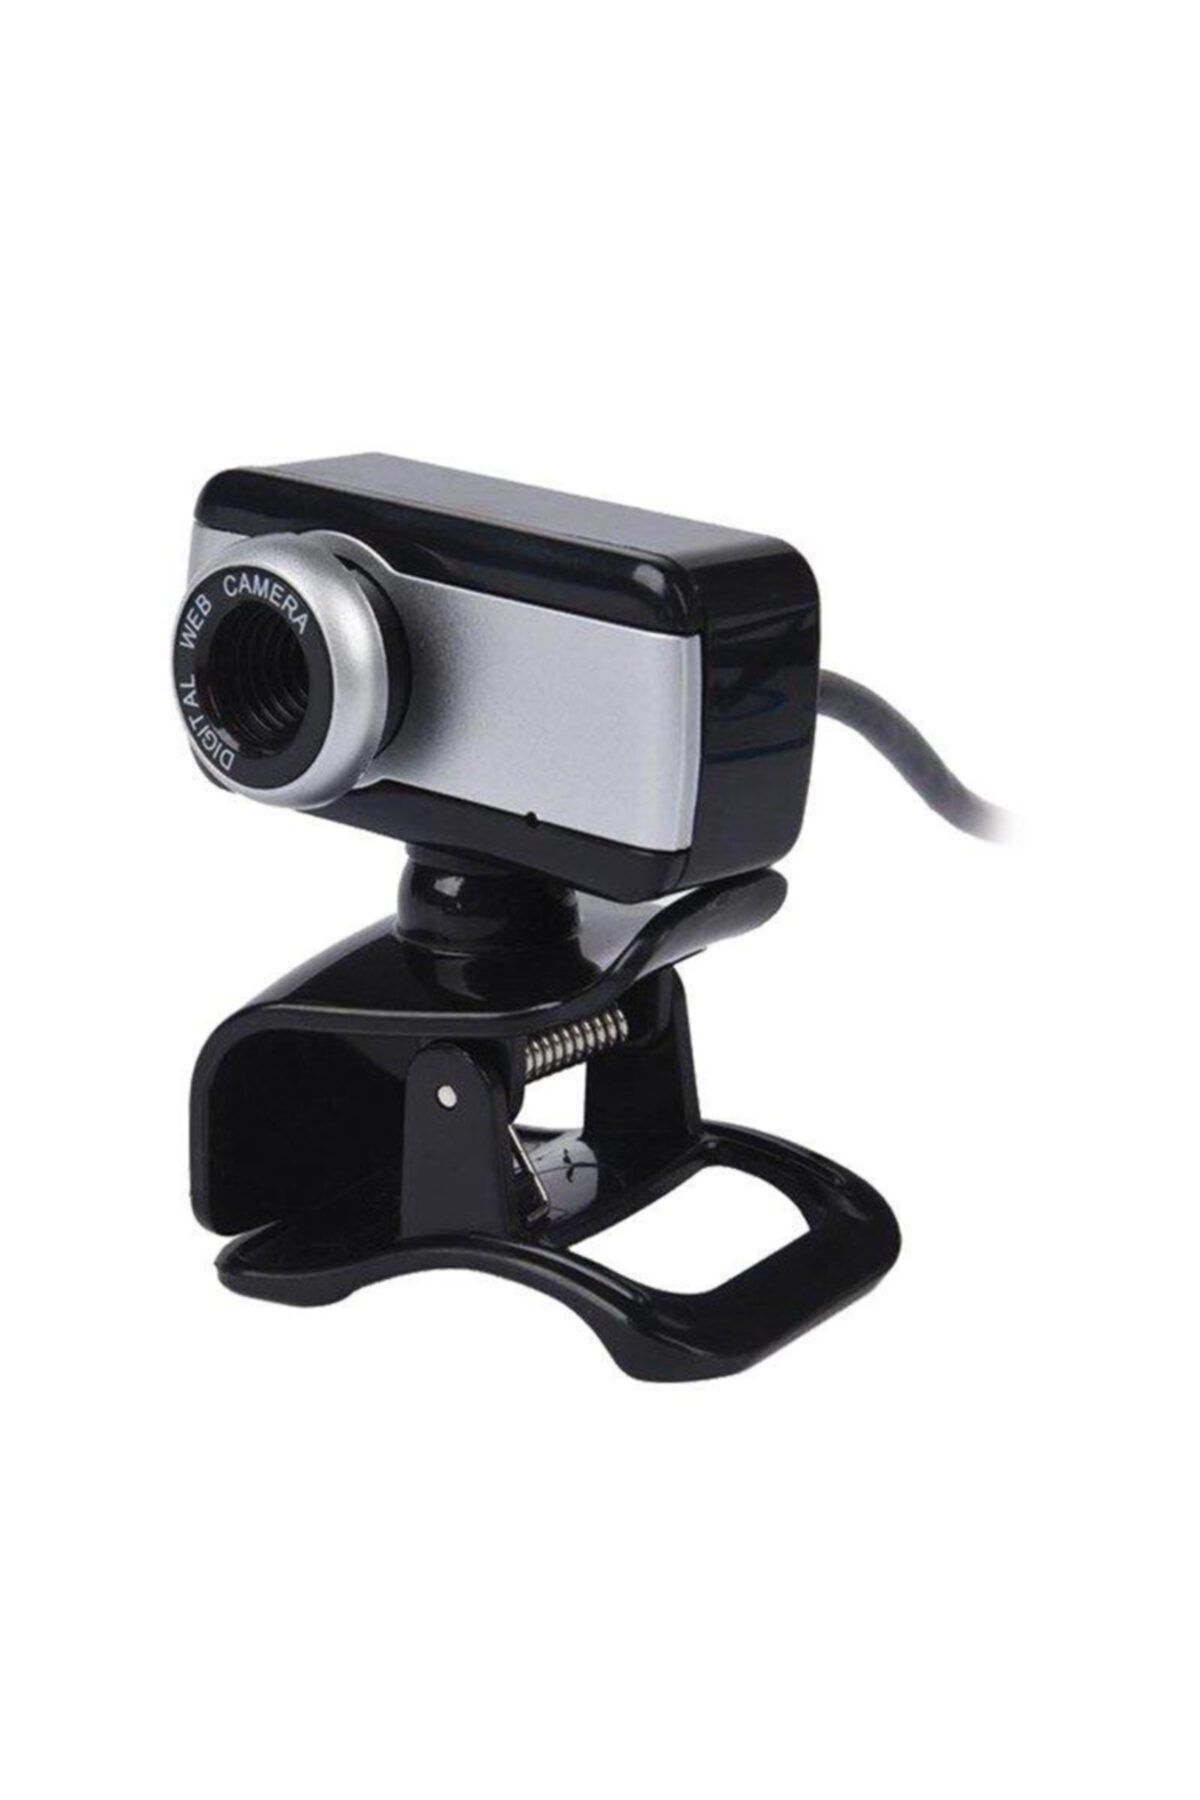 electroon Webcam 480p Mikrofonlu Web Kamera